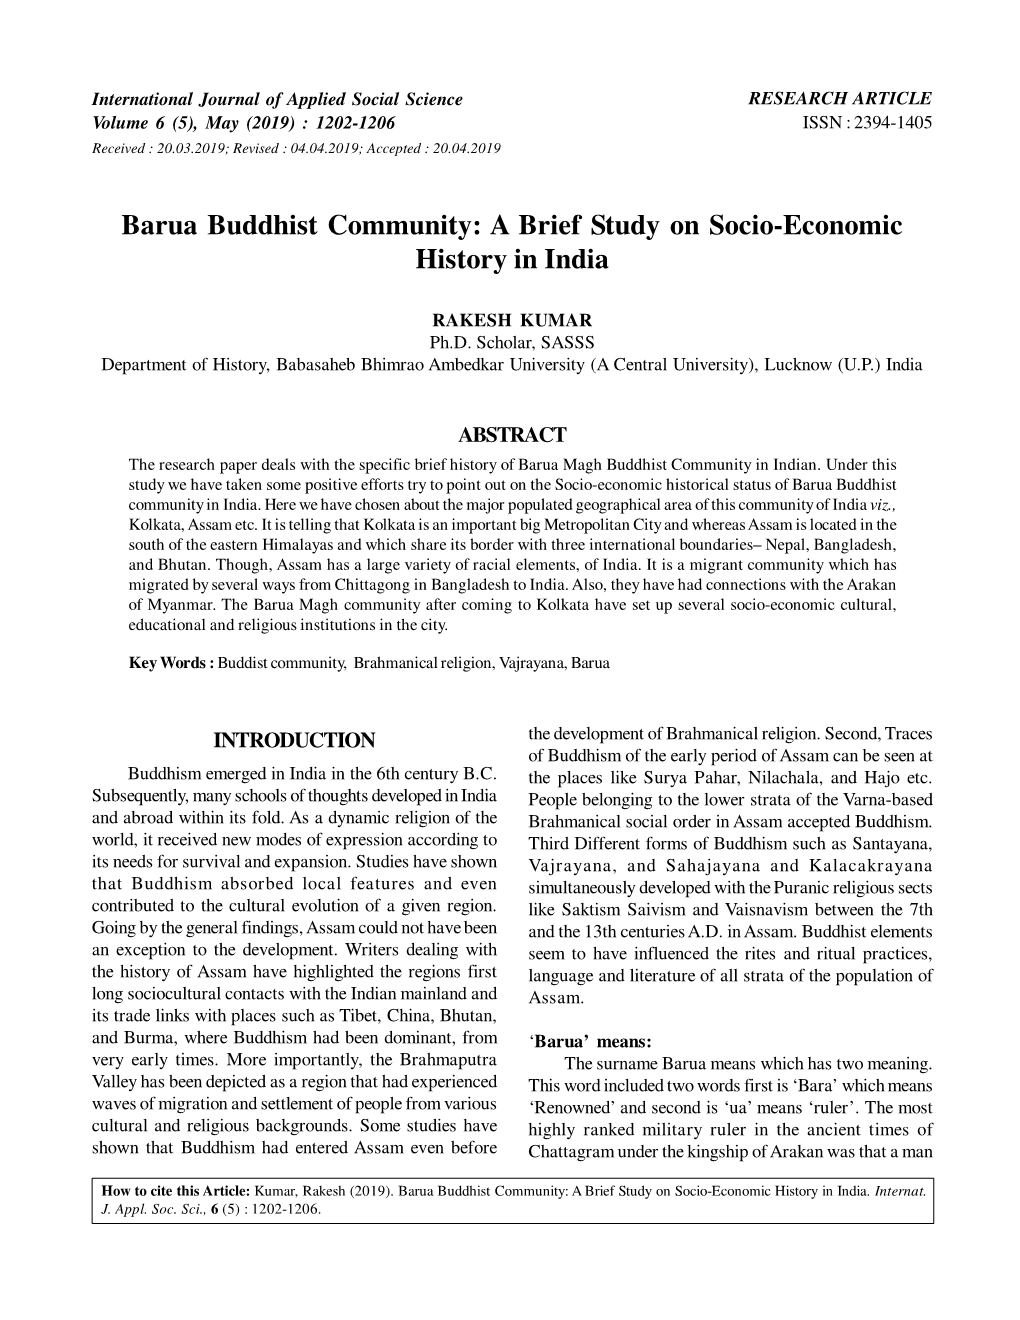 Barua Buddhist Community: a Brief Study on Socio-Economic History in India